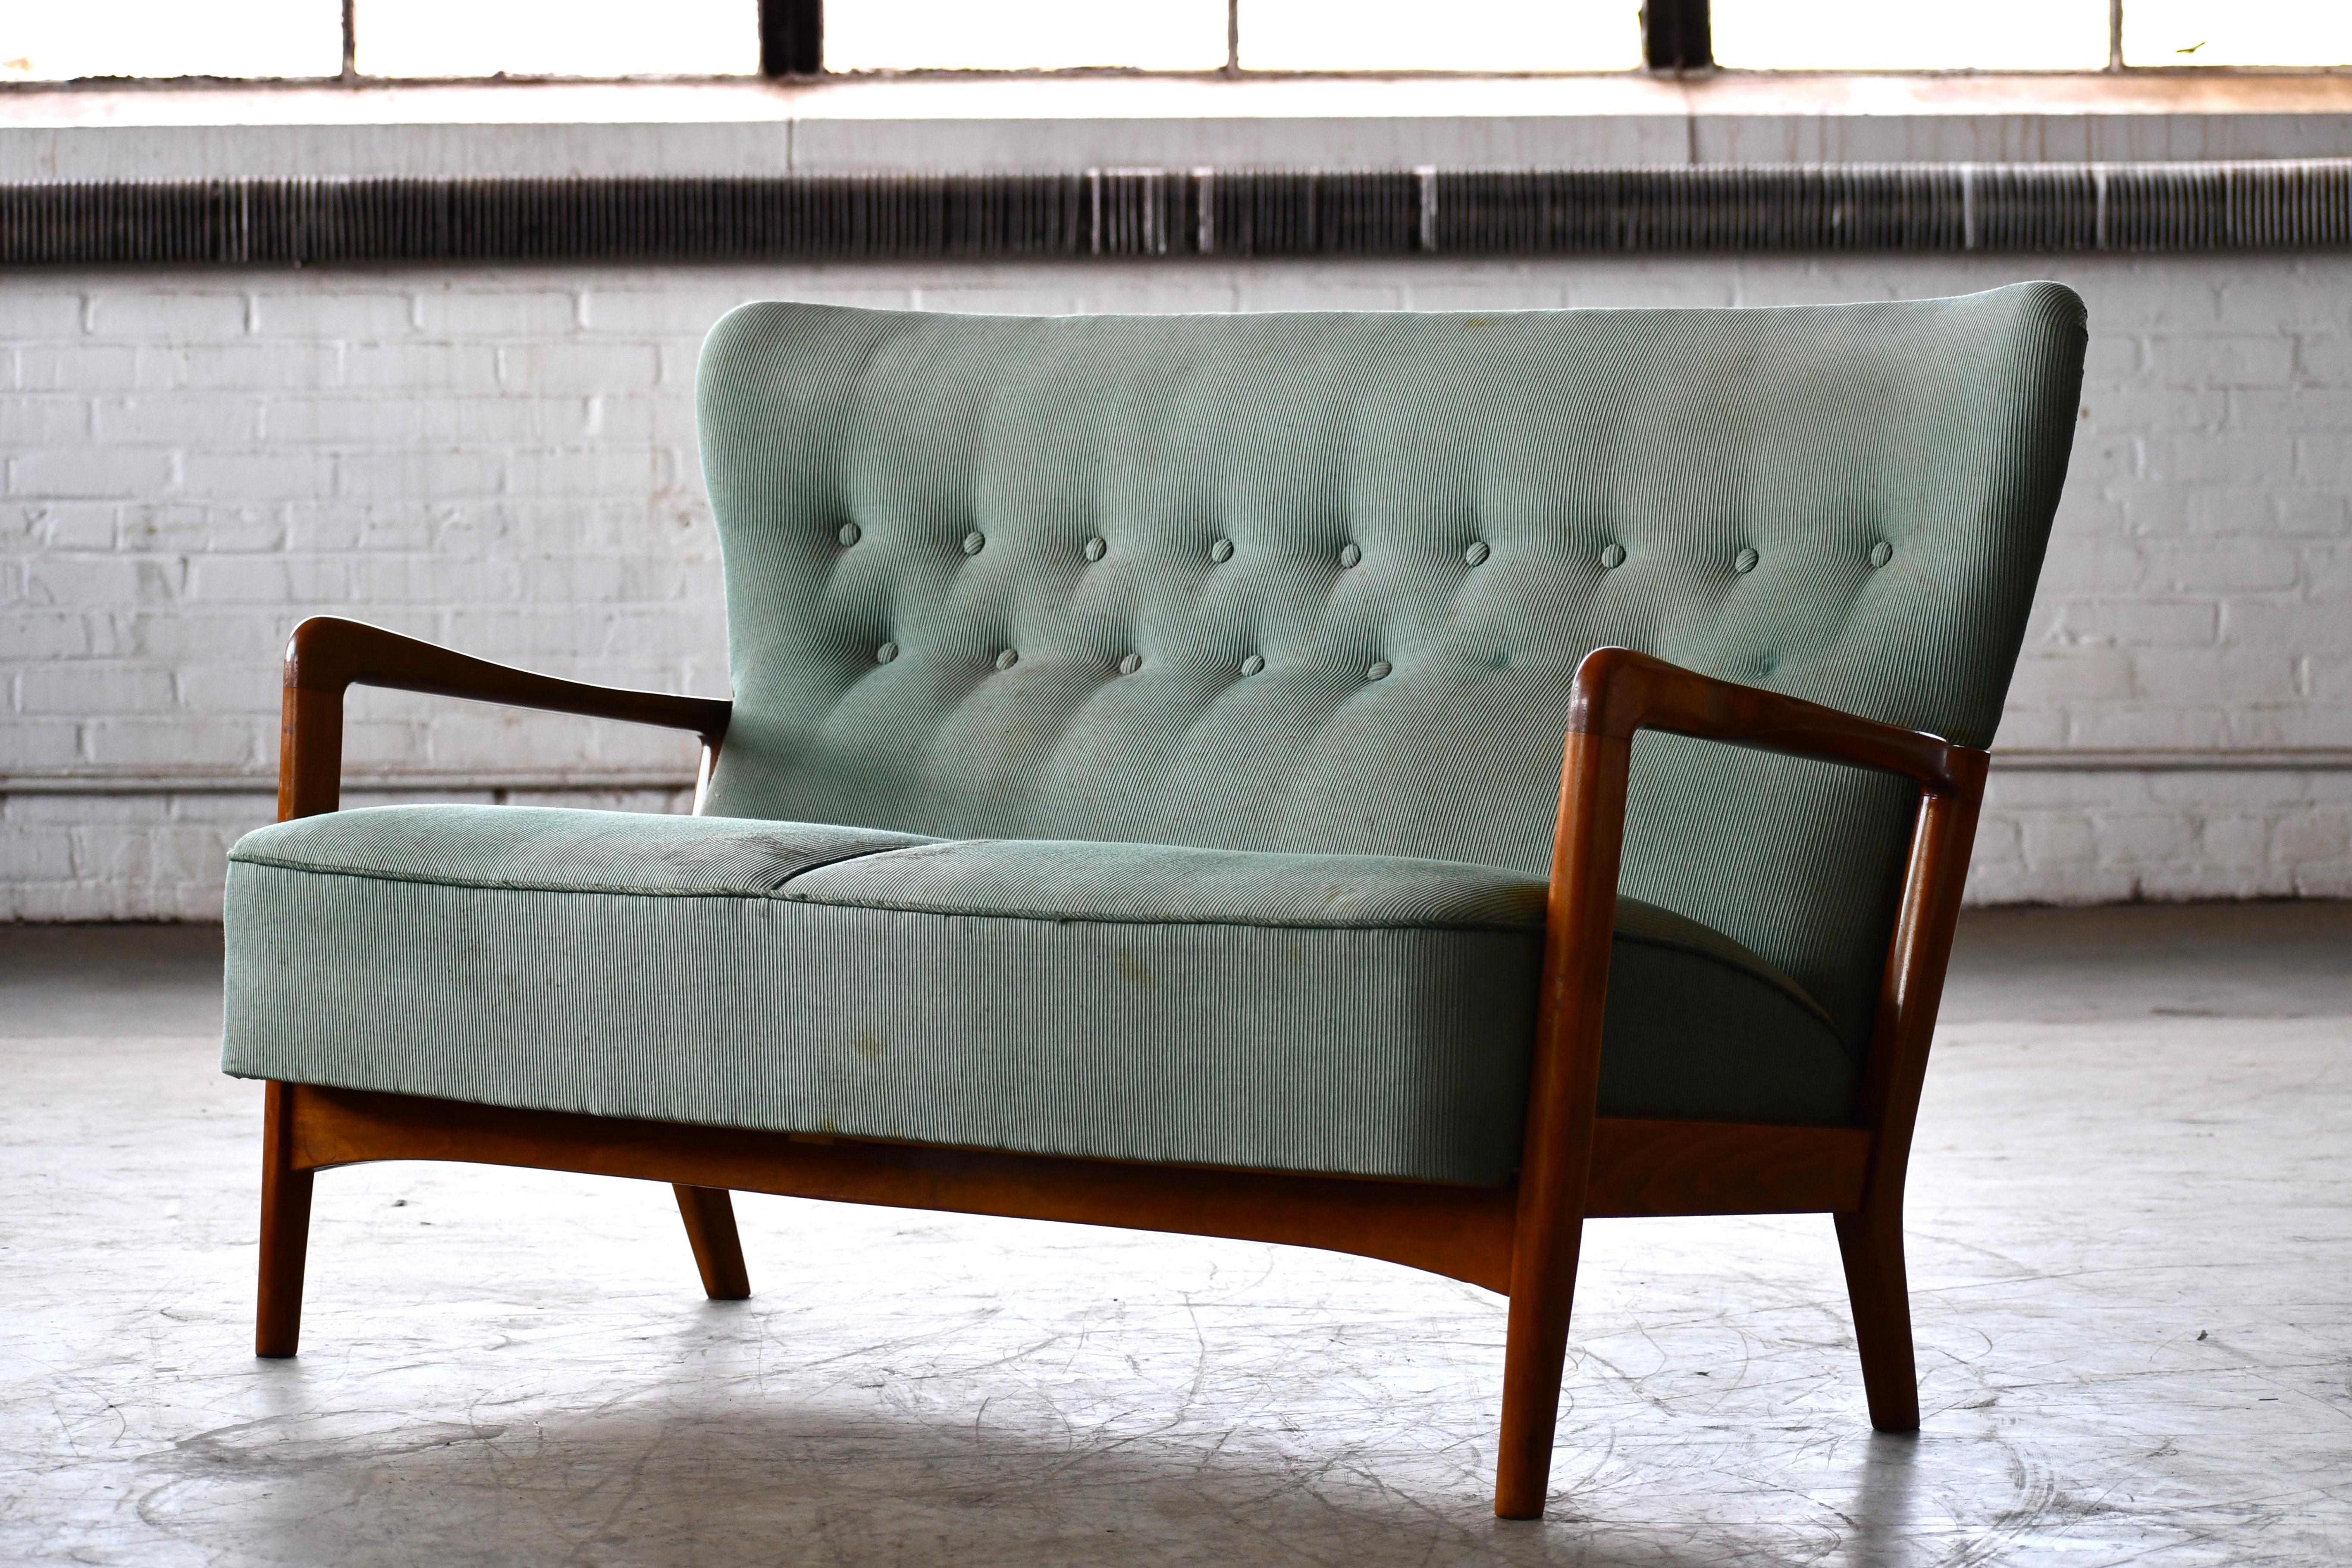 Fantastisches Fritz-Hansen-Sofa aus den 1940er Jahren, entworfen von Soren Hansen in dem für das Unternehmen charakteristischen Stil der offenen Armlehnen. Hergestellt aus gebeiztem Buchenholz, das sich durch seine Granularität und Farbe